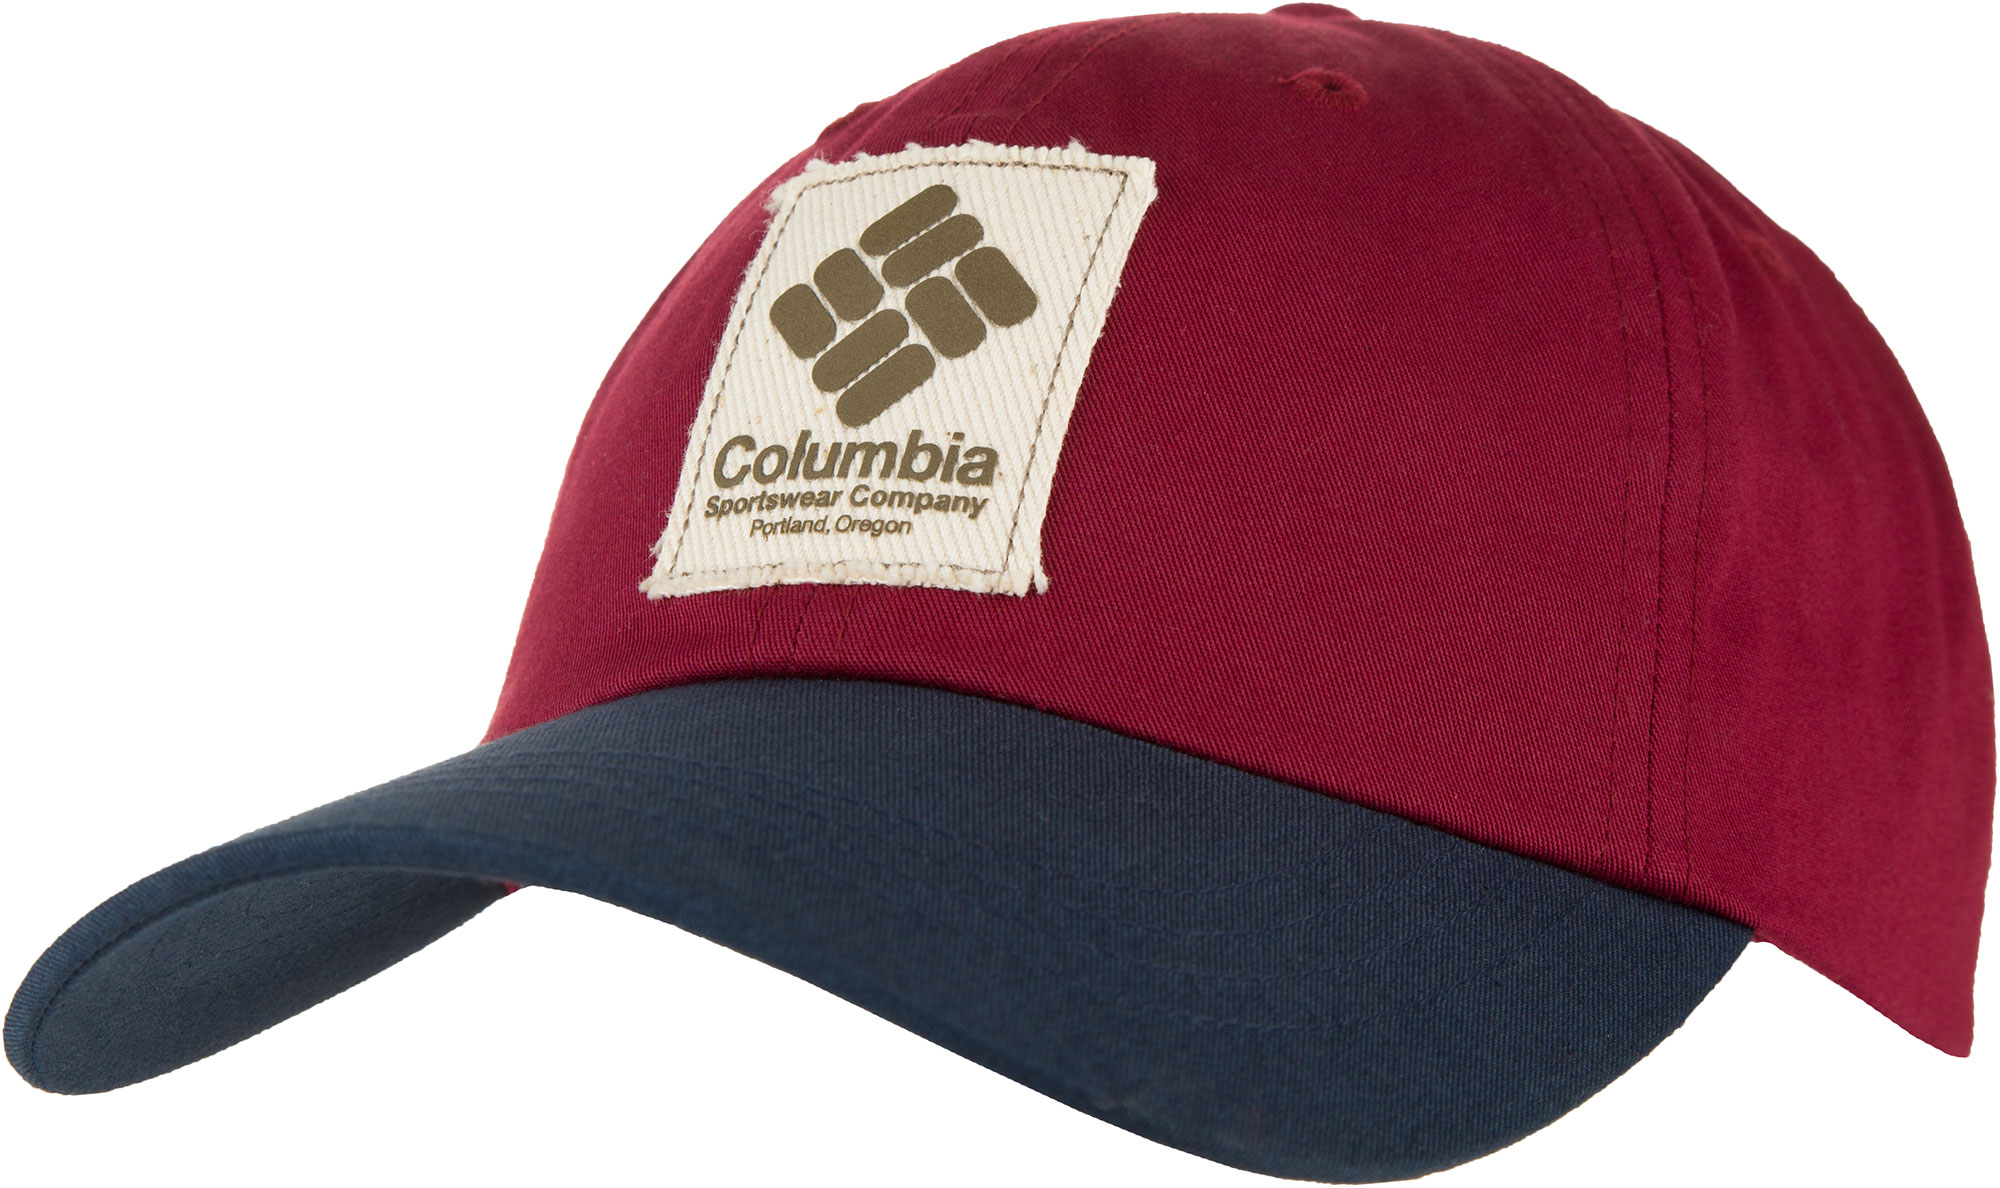 Спортмастер бейсболки мужские. Бейсболка Columbia Roc II. Бейсболка Columbia Roc III. Кепка Columbia Sportswear. Columbia Summertide бейсболка.